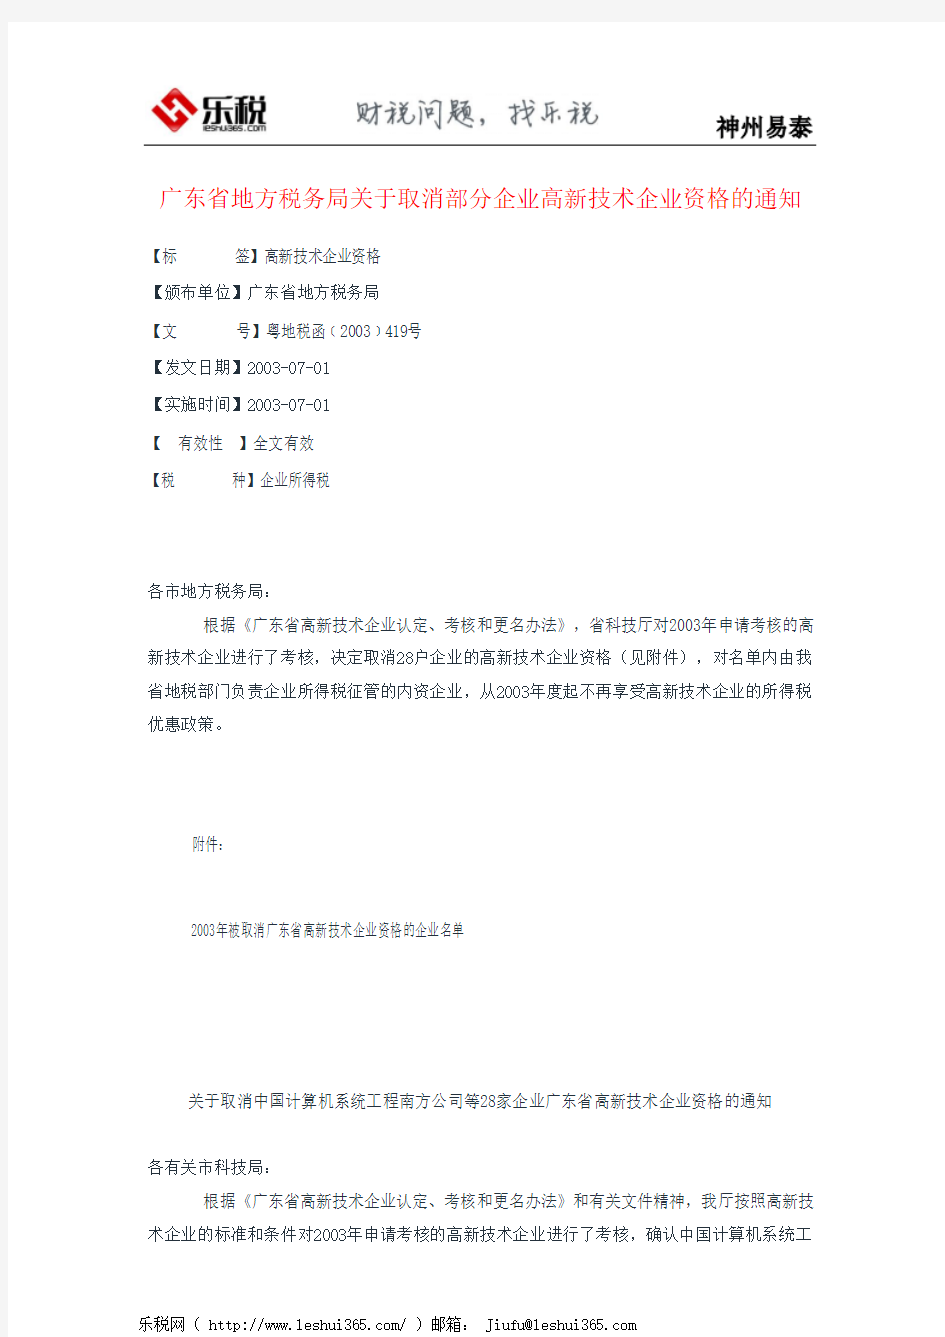 广东省地方税务局关于取消部分企业高新技术企业资格的通知